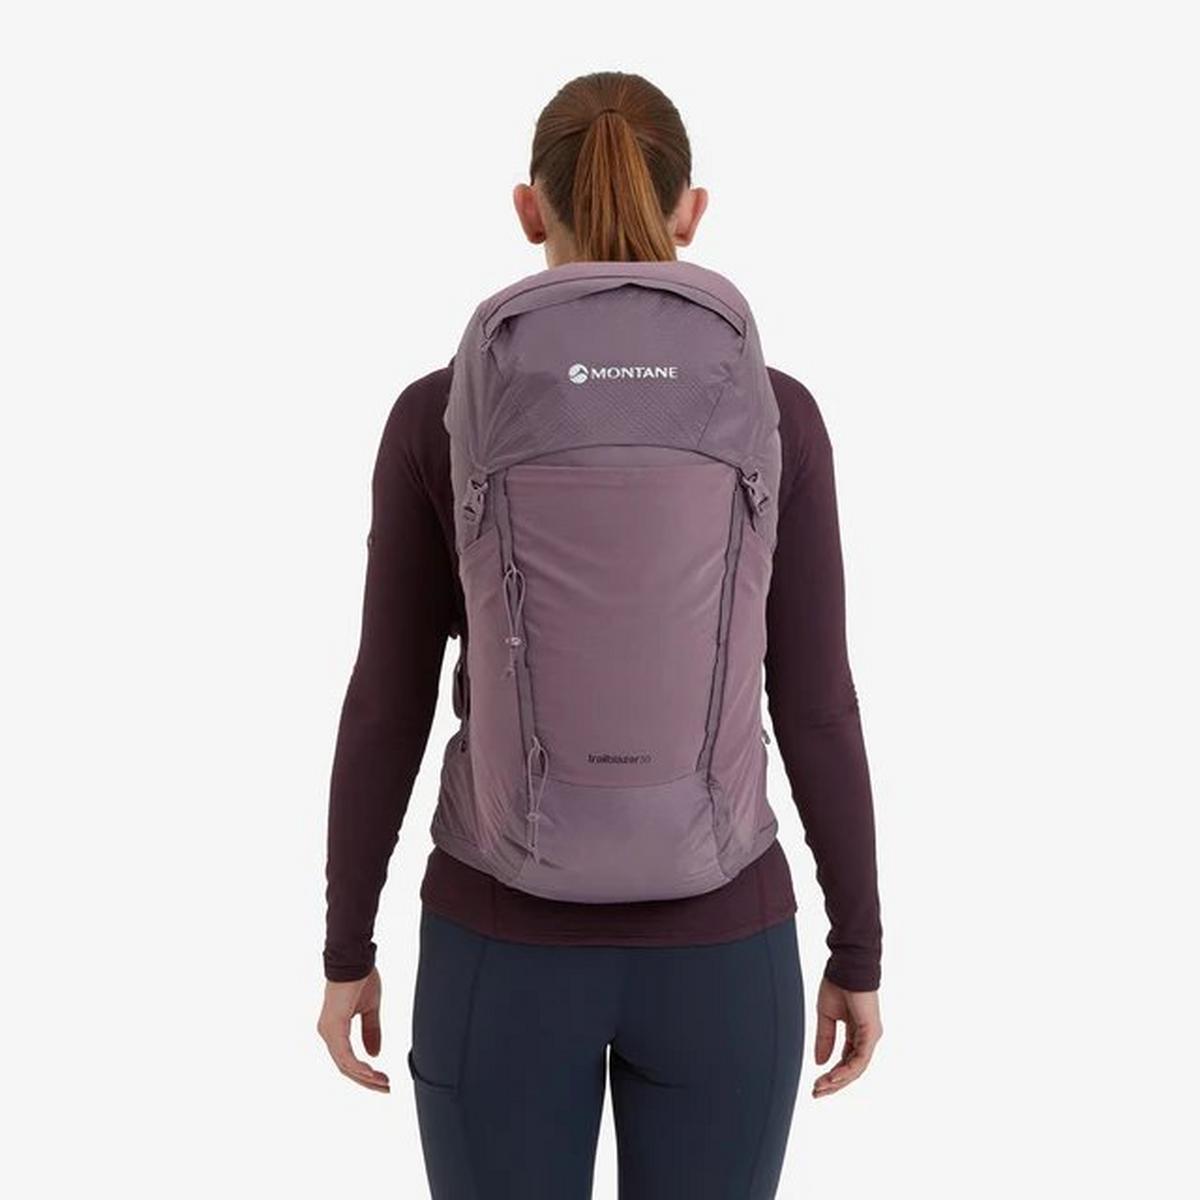 Montane Women's Trailblazer 30L Backpack - Moonscape